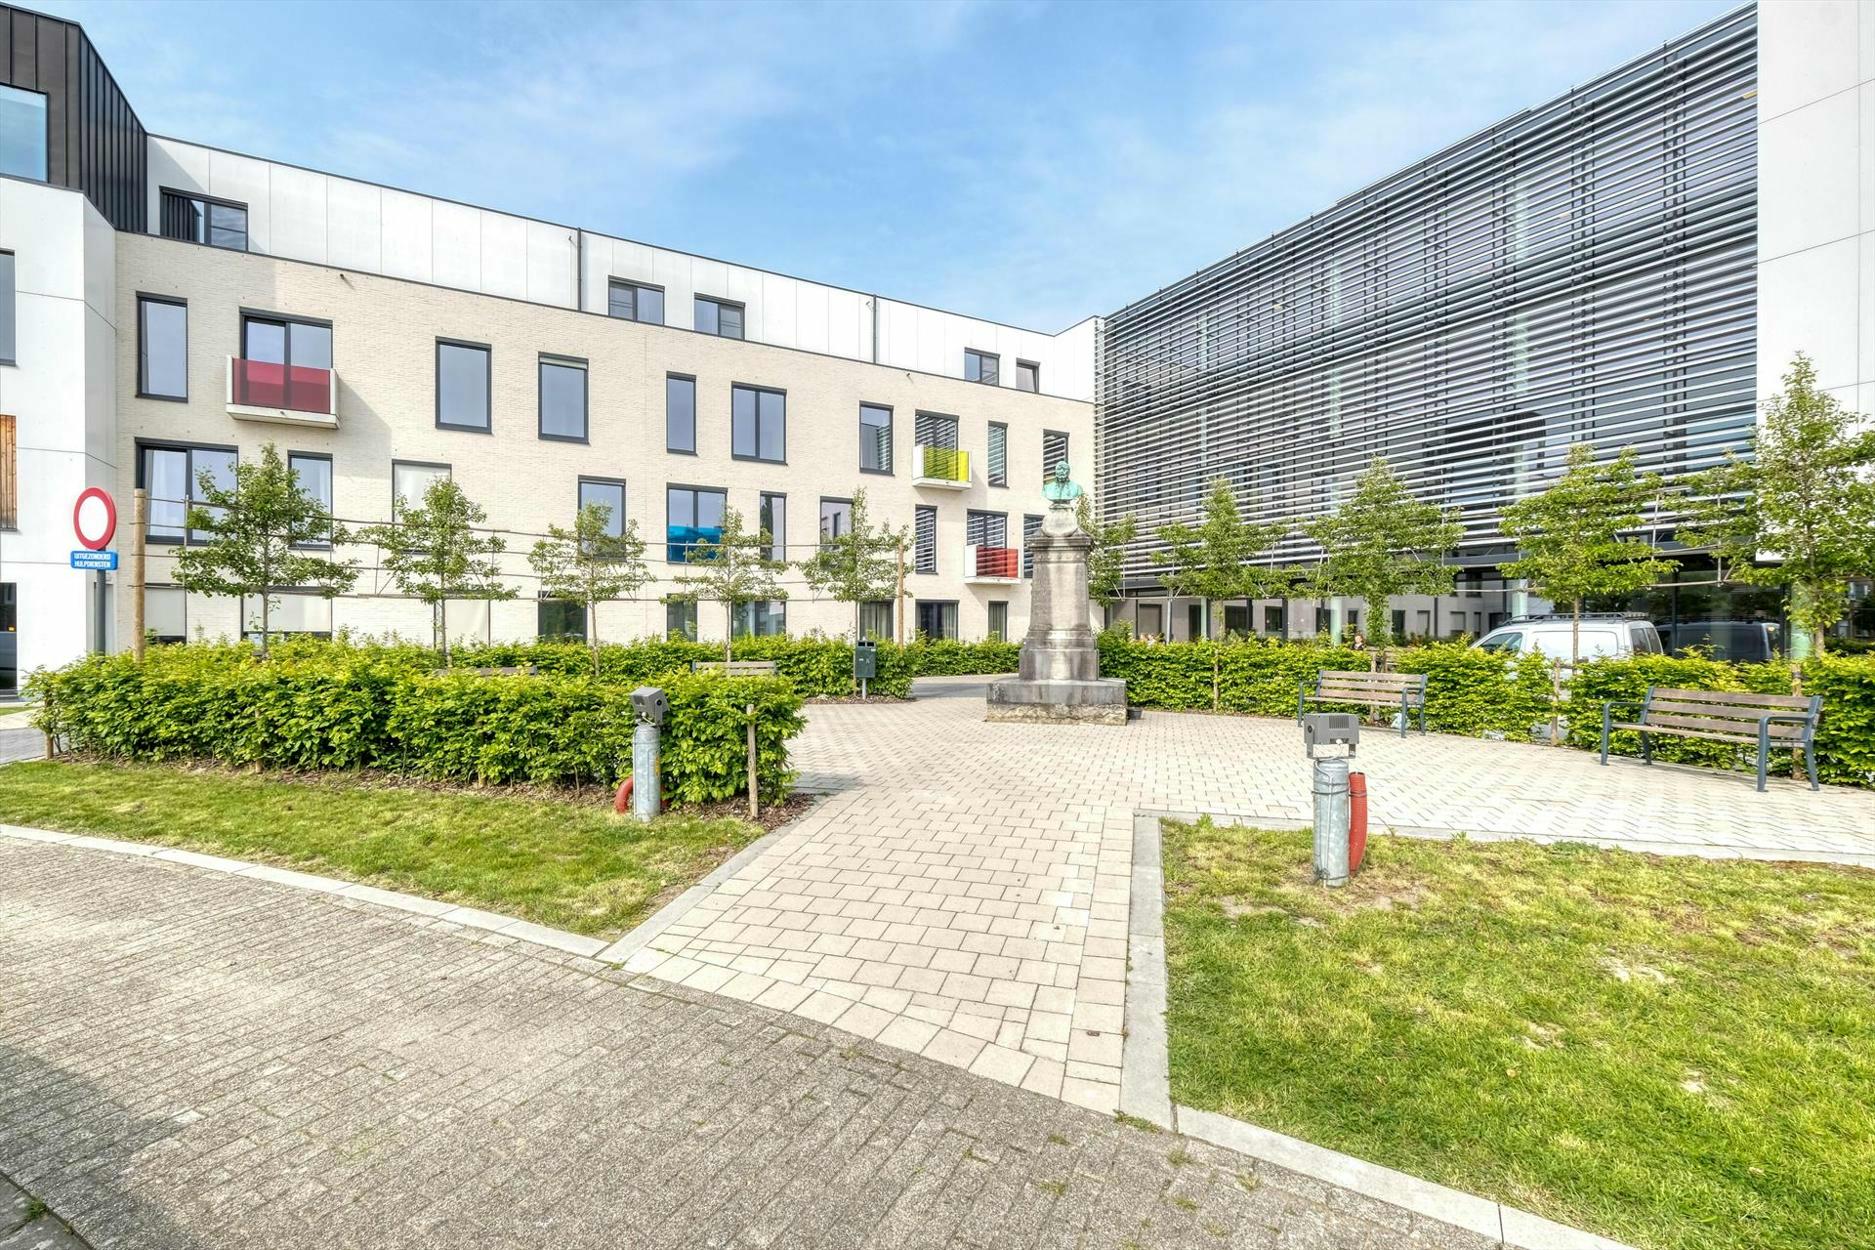 Gunstig gelegen assistentiewoning met een bewoonbare oppervlakte van 40 m² te Tienen